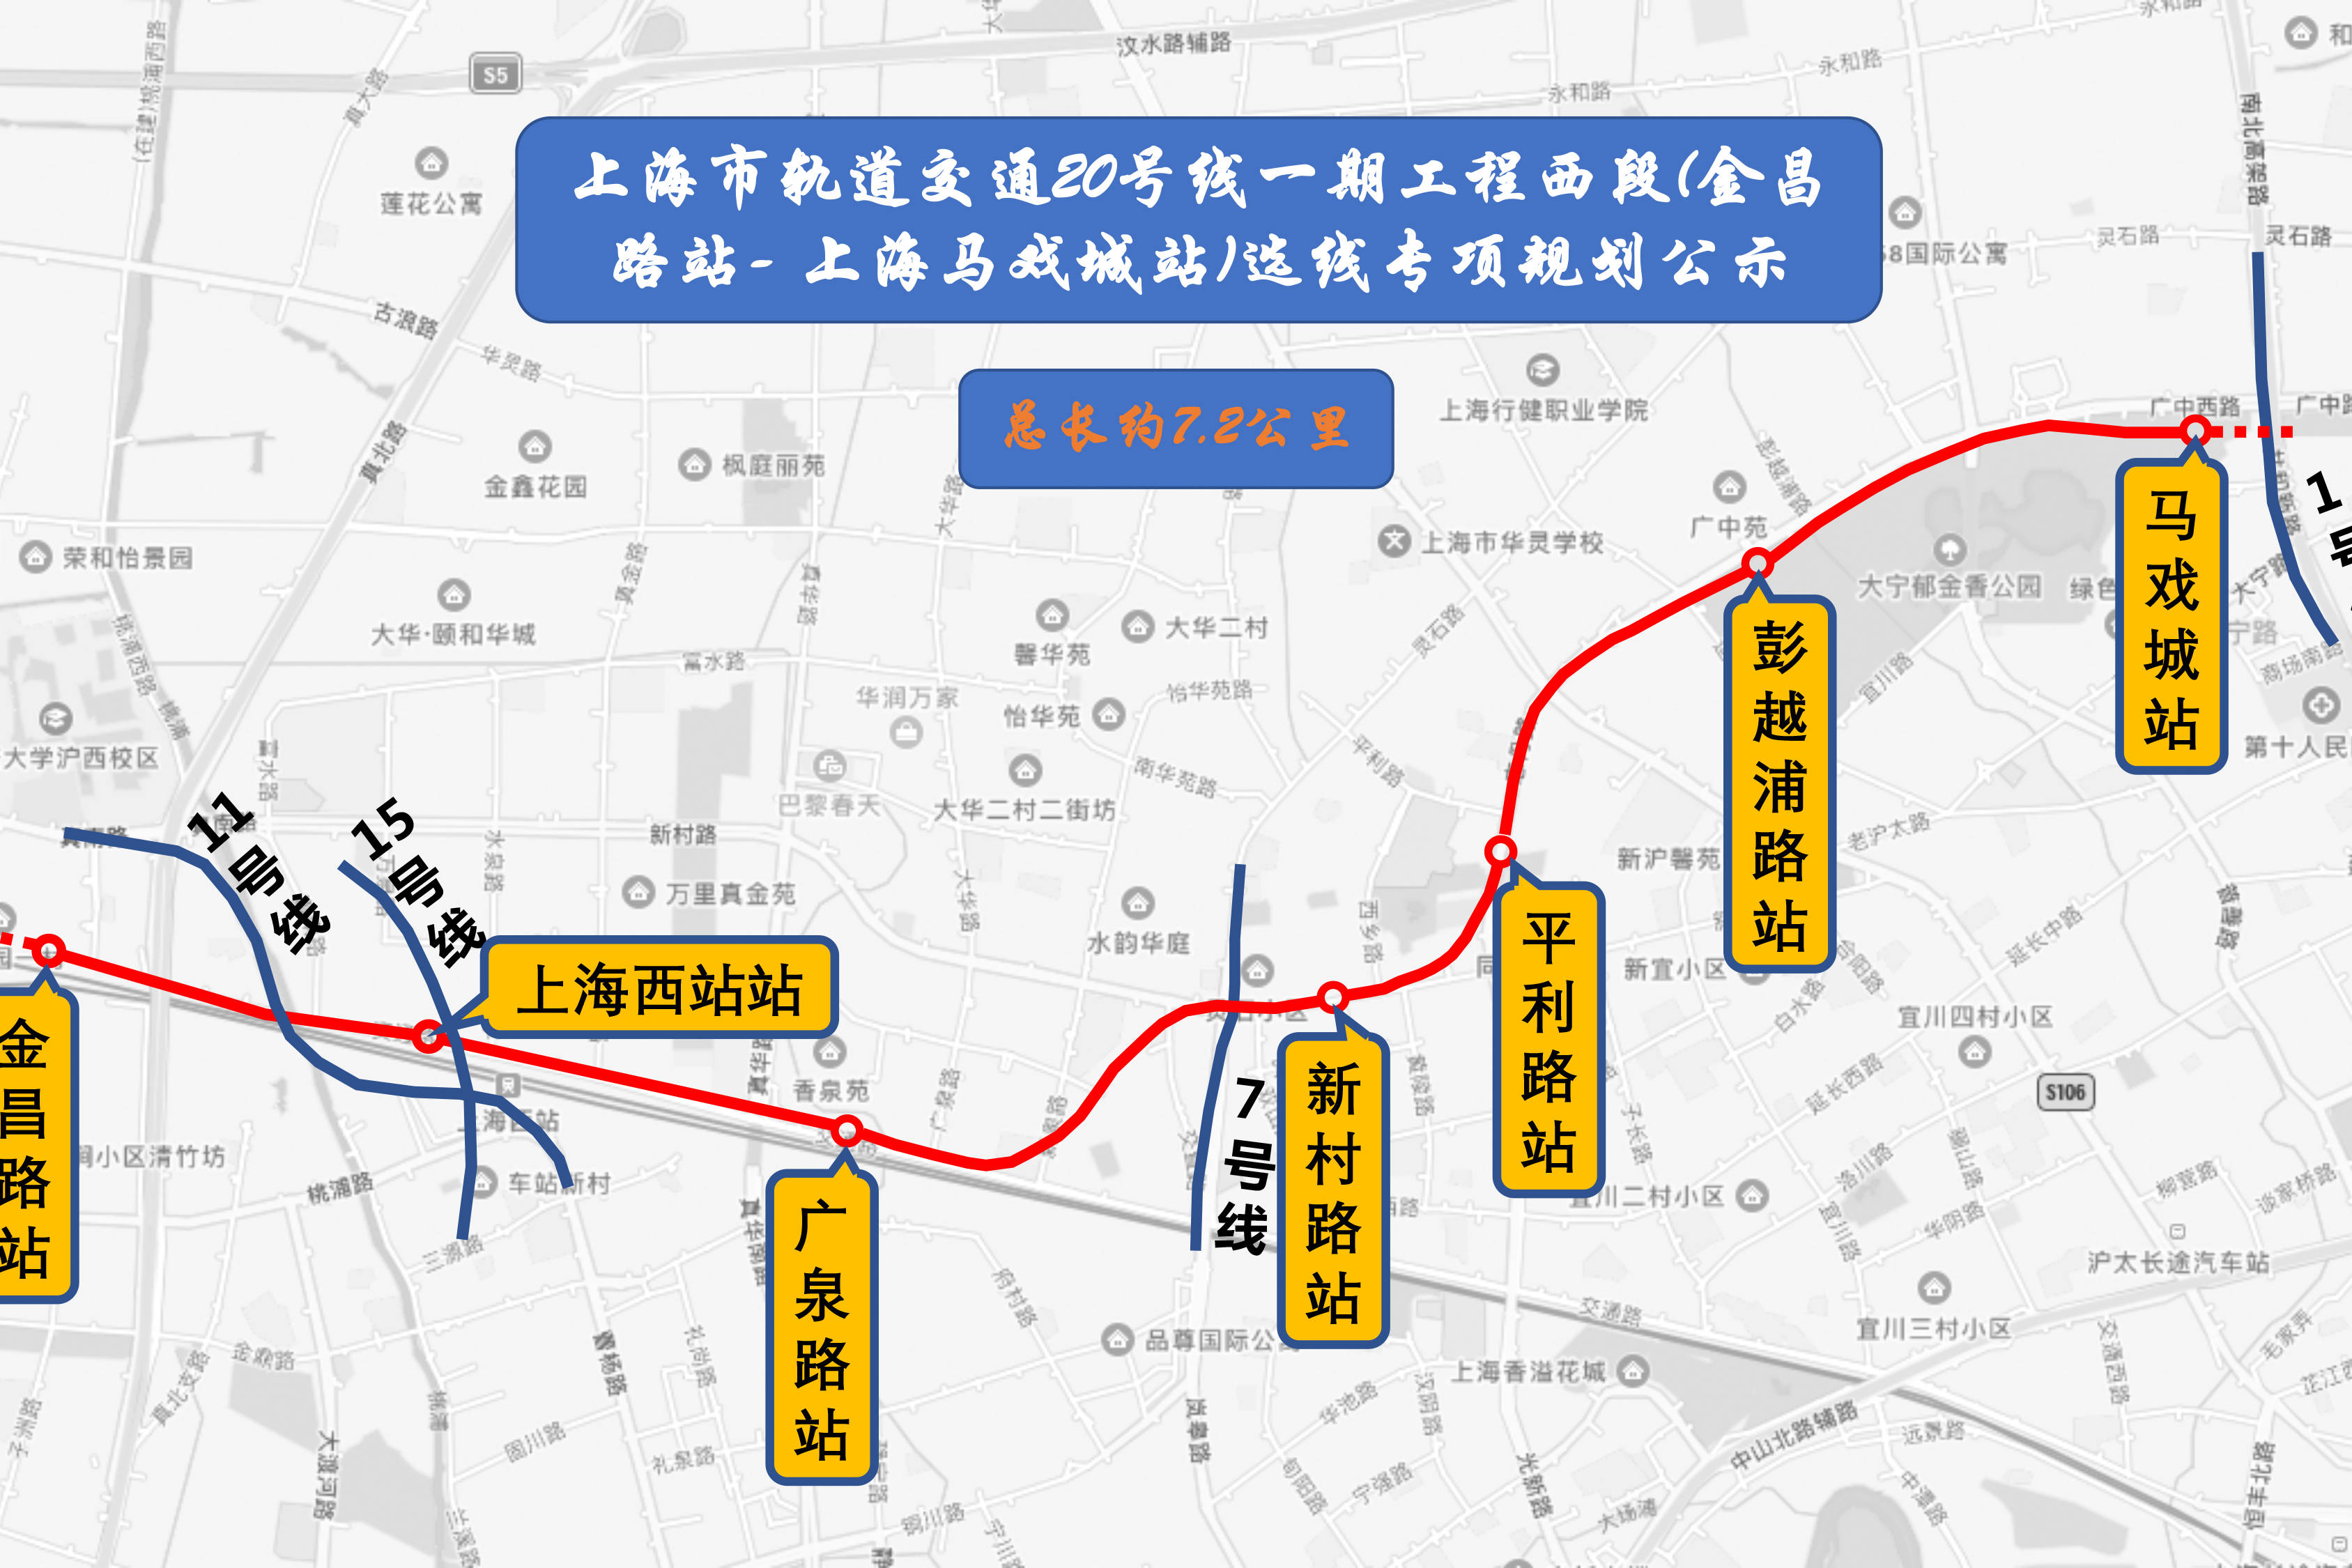 上海轨道交通20号线一期工程西段最新公示站点线路动态演示